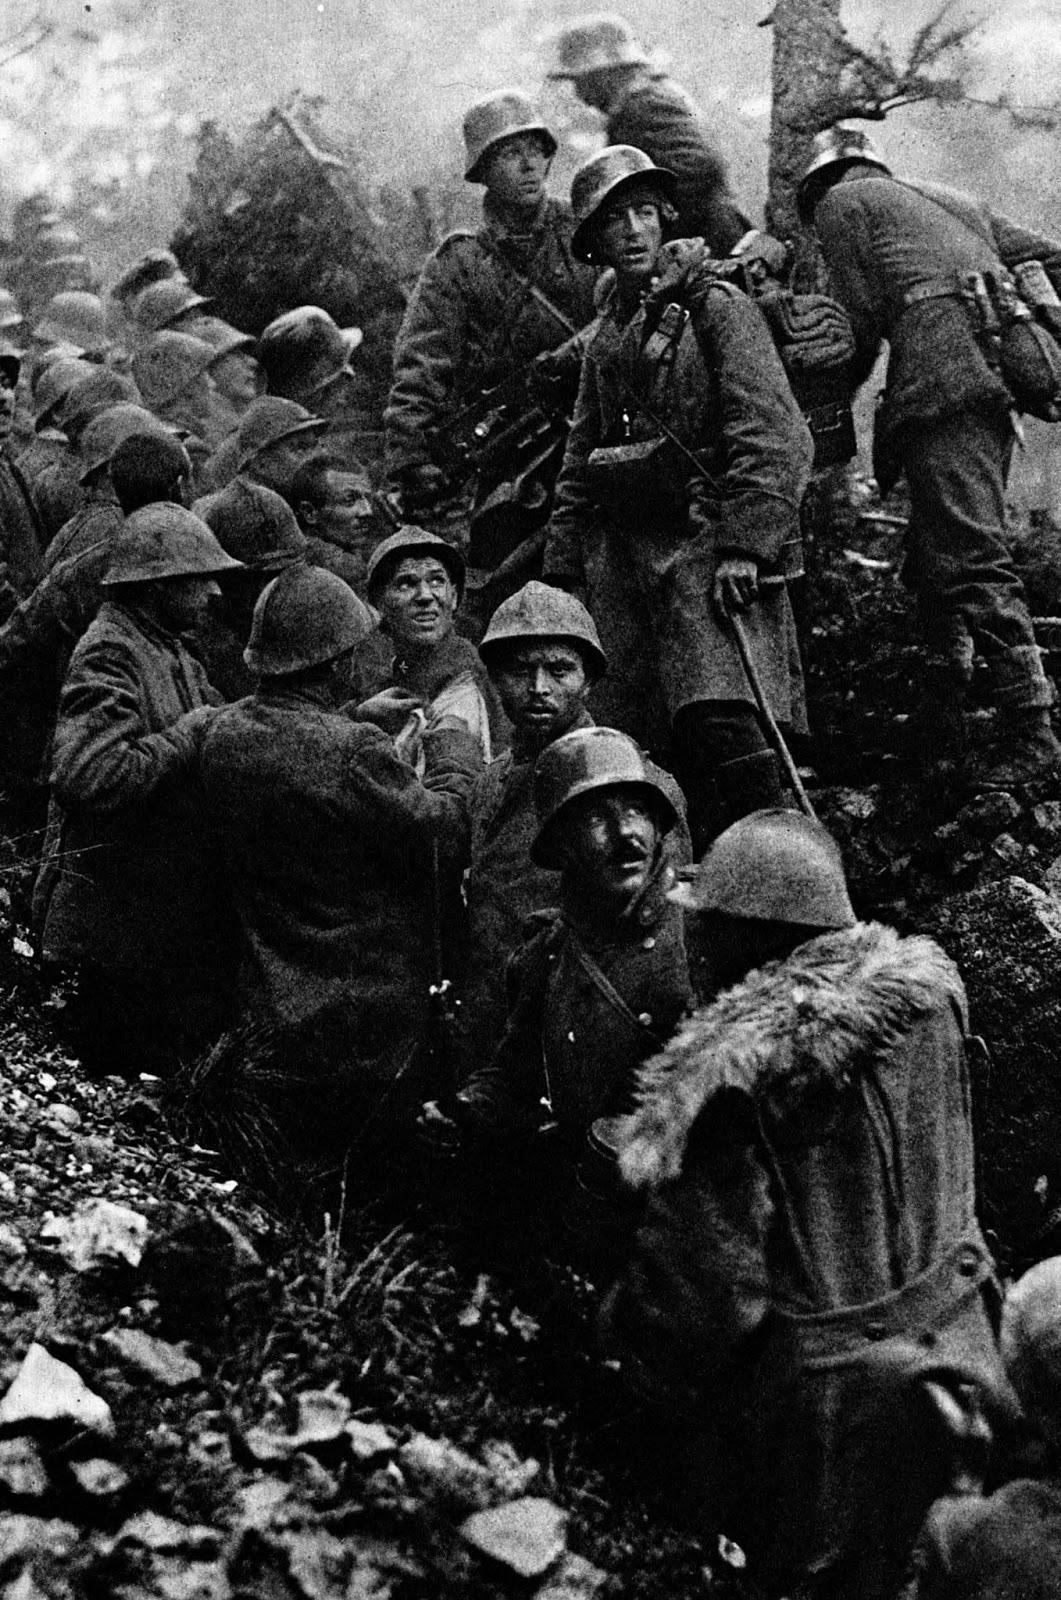 Capturé des soldats italiens sont escortés à l'arrière par des soldats allemands lors de la Bataille de Caporetto, 1917